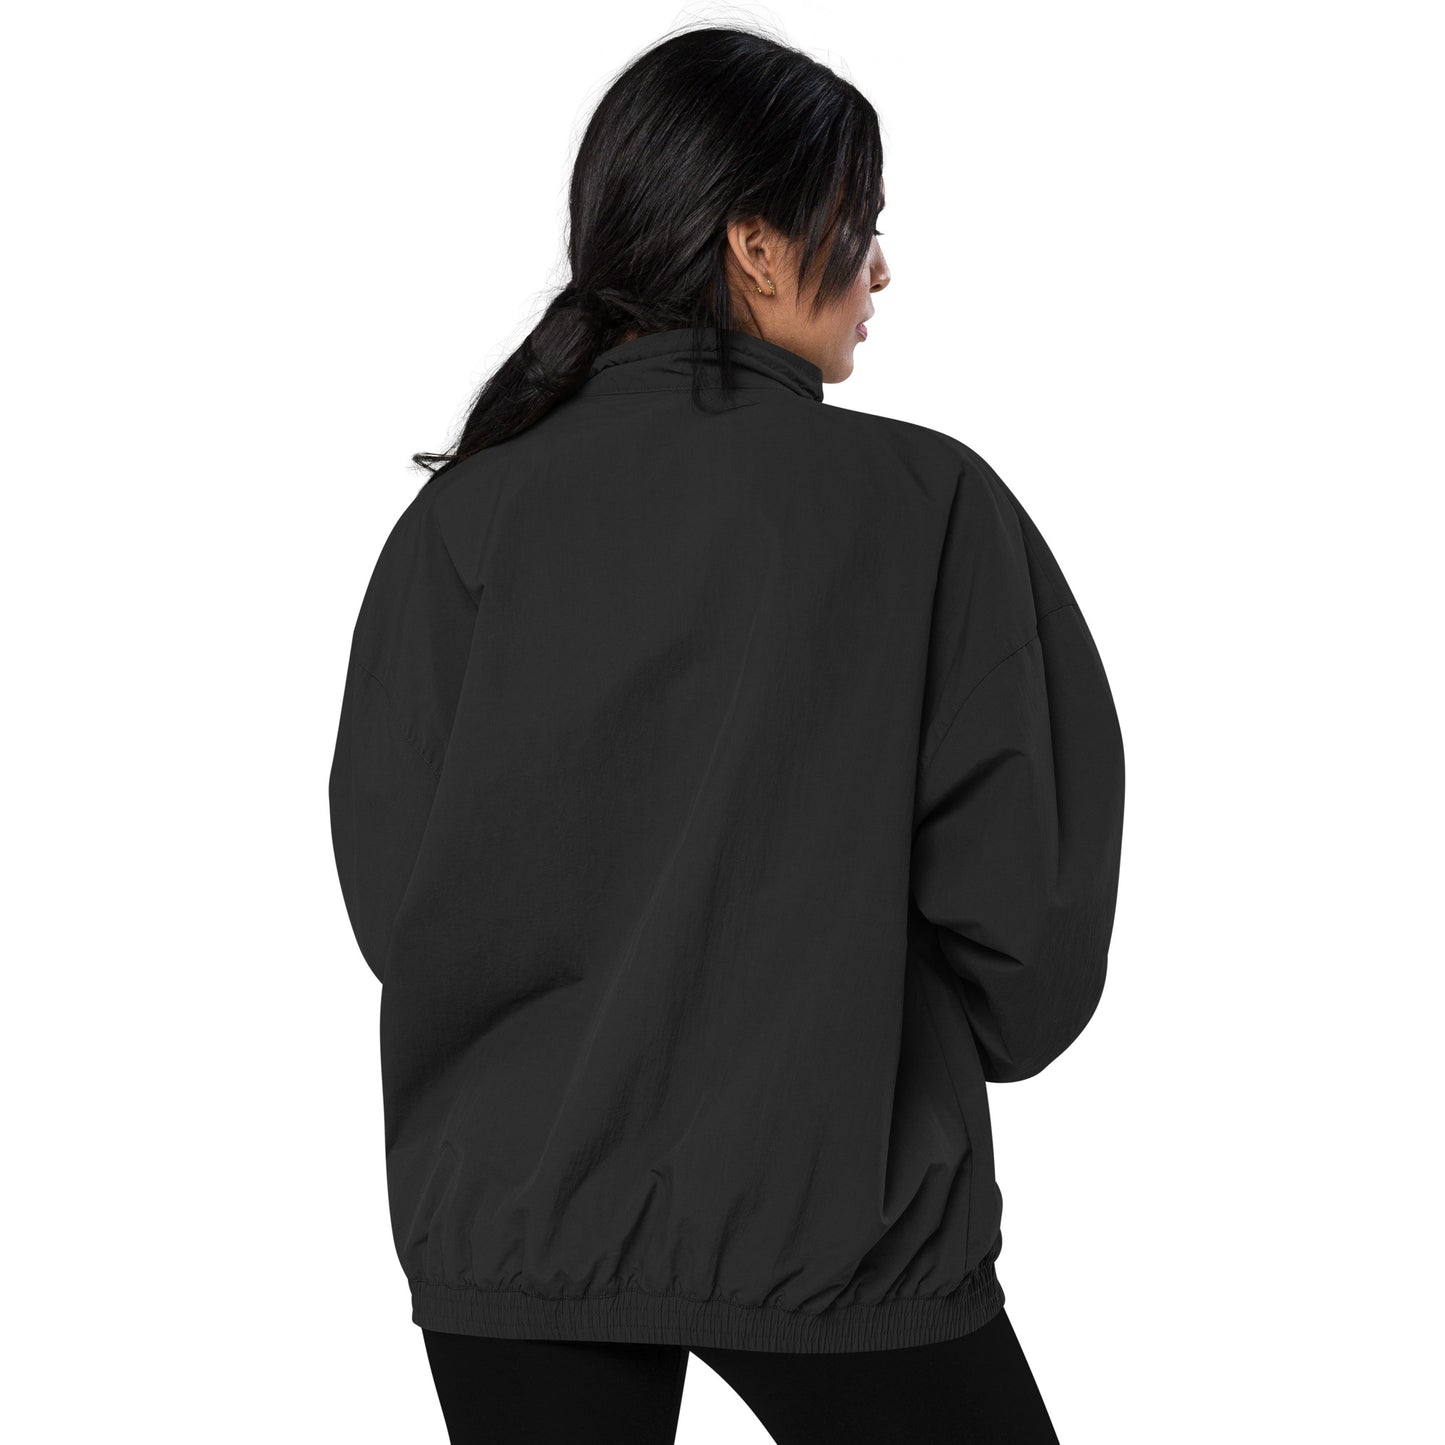 GRANDEUR® Women's Tracksuit jacket